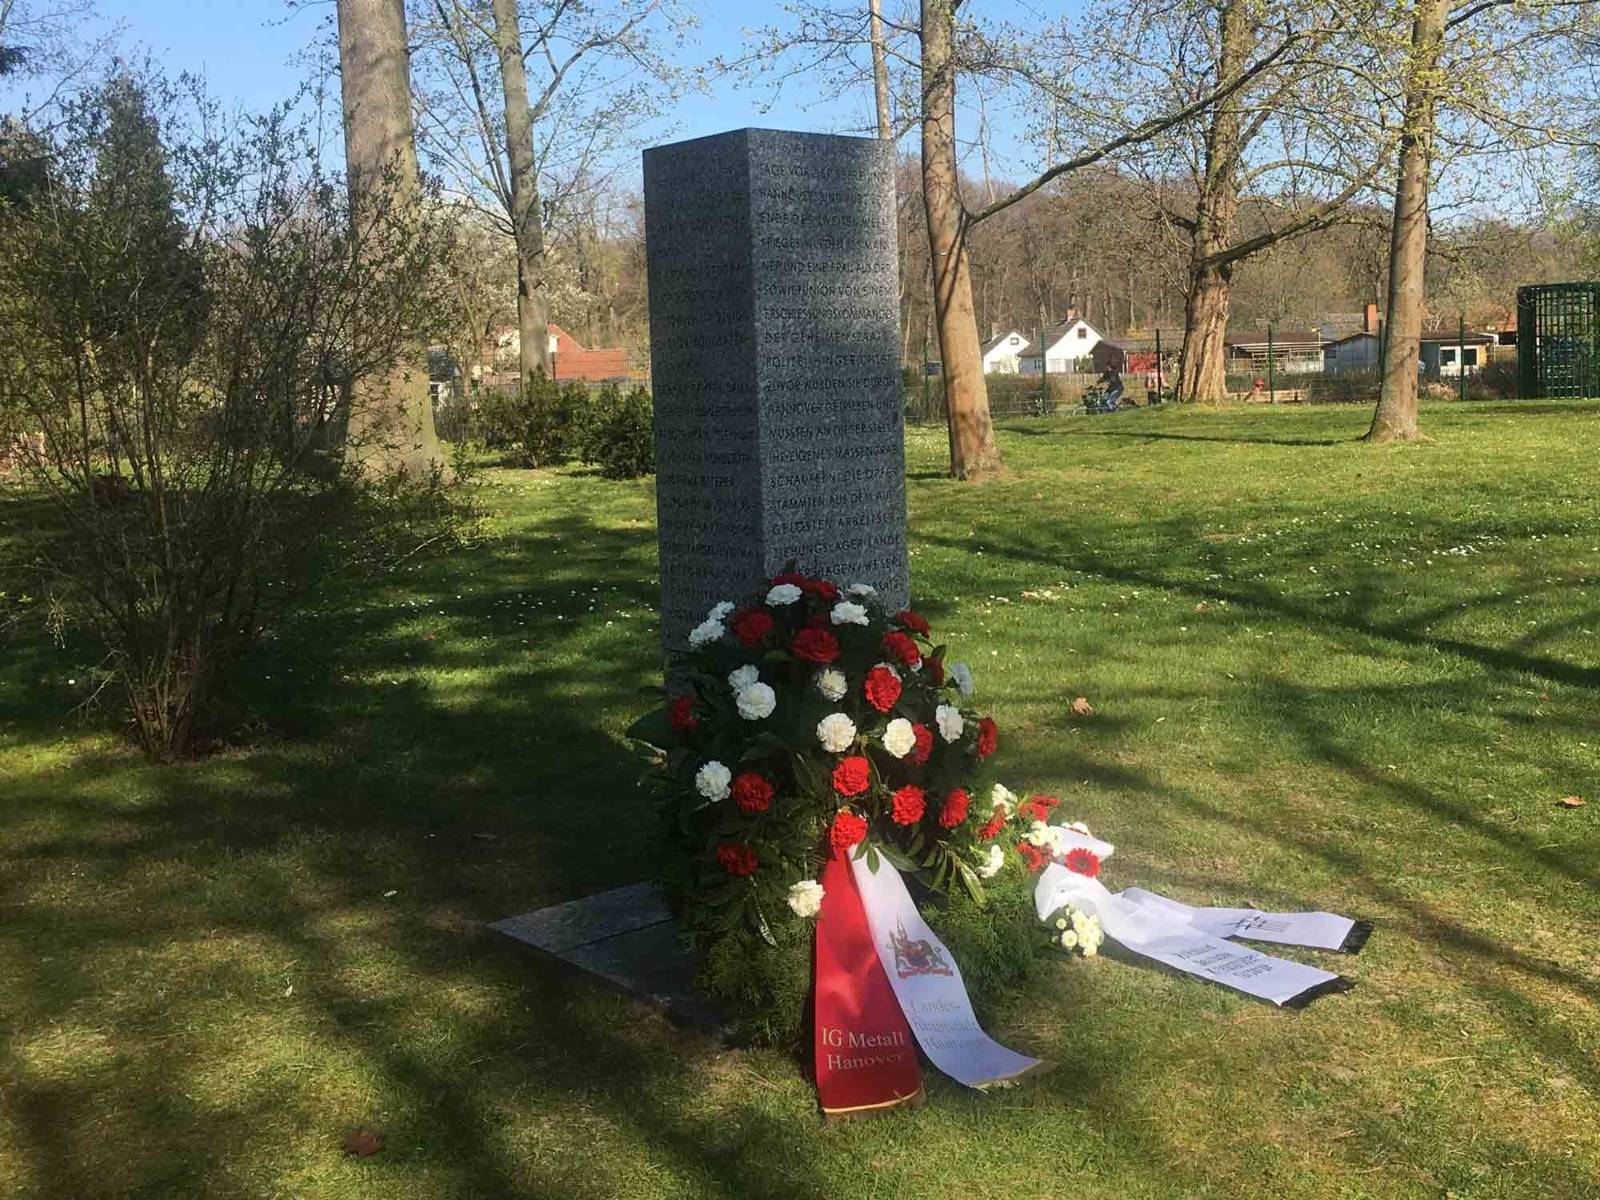 Stilles Gedenken am 6. April 2020 an der Gedenkstele für die Erschießungen auf dem Friedhof Seelhorst am 6. April 1945